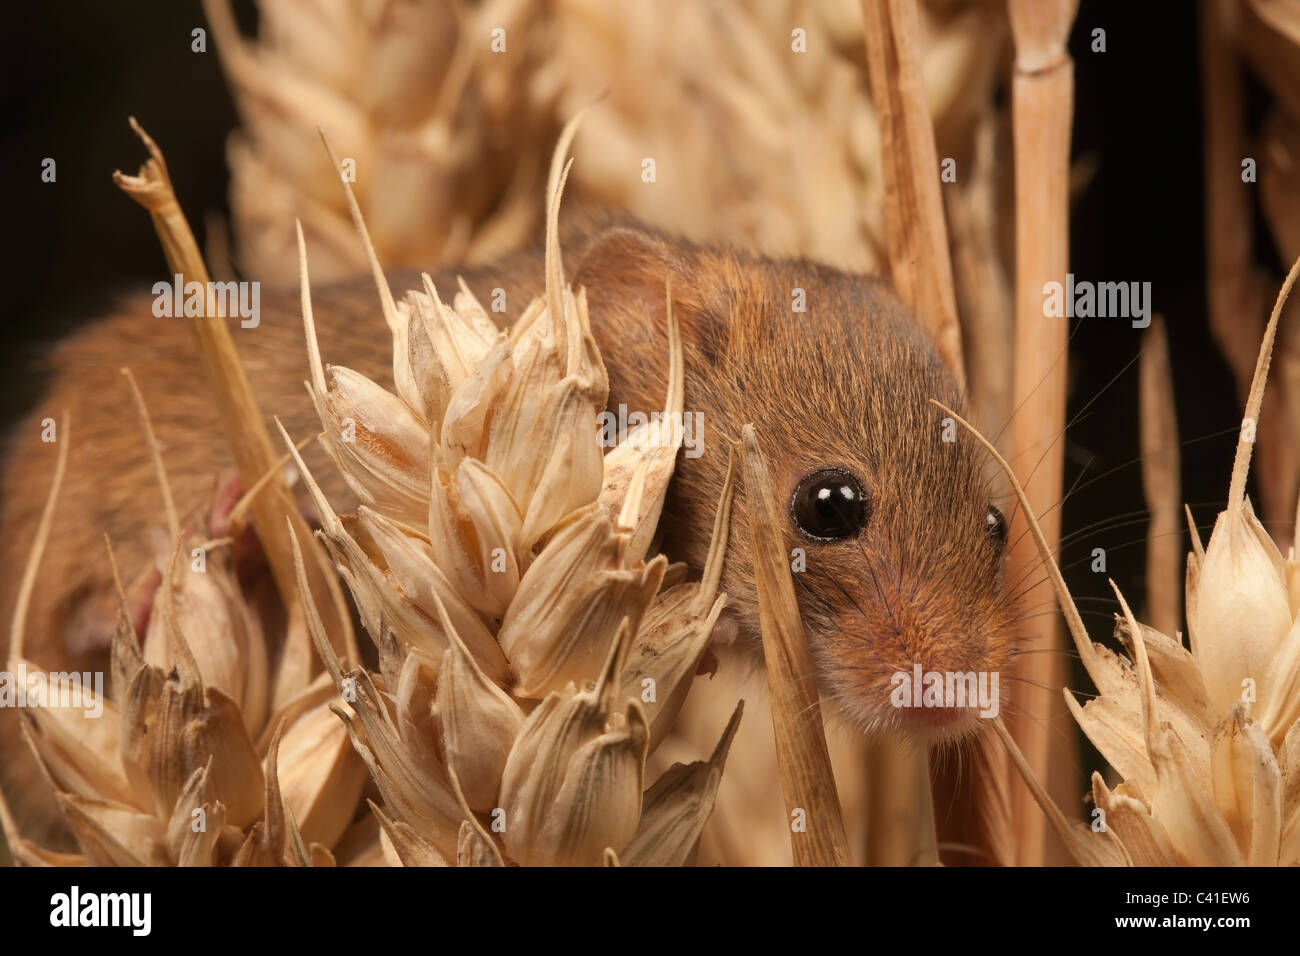 Zwergmaus [Micromys Minutus] in Weizen-Getreide, Porträt Stockfoto